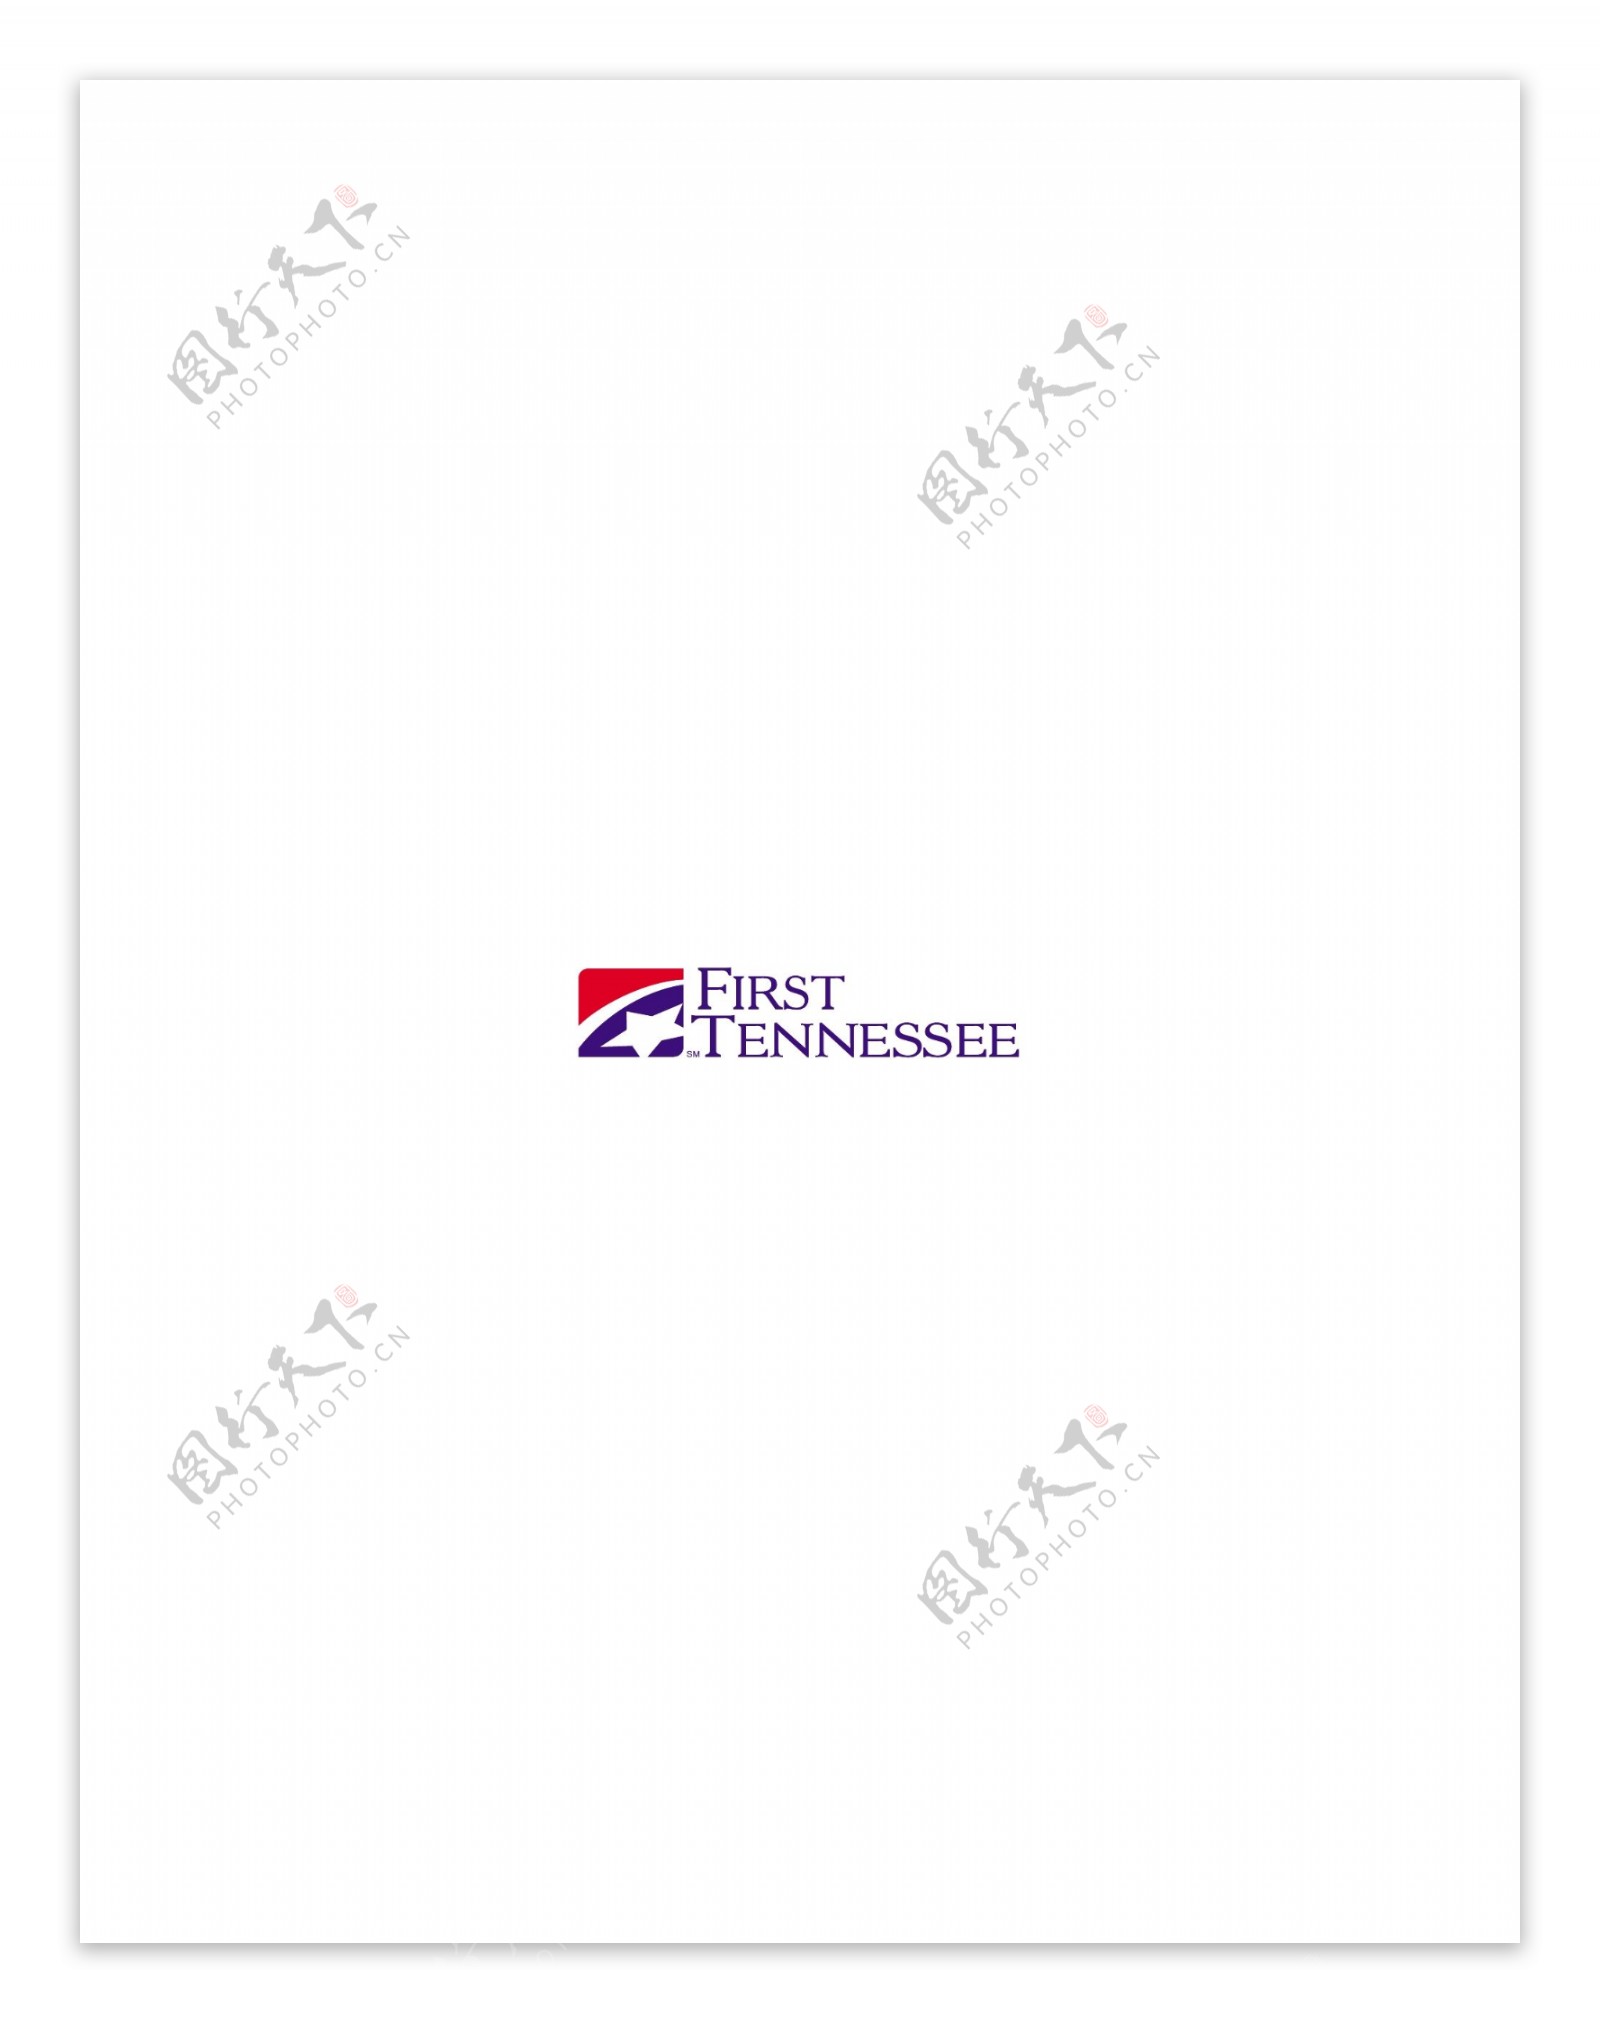 FirstTennesseelogo设计欣赏FirstTennessee金融机构LOGO下载标志设计欣赏